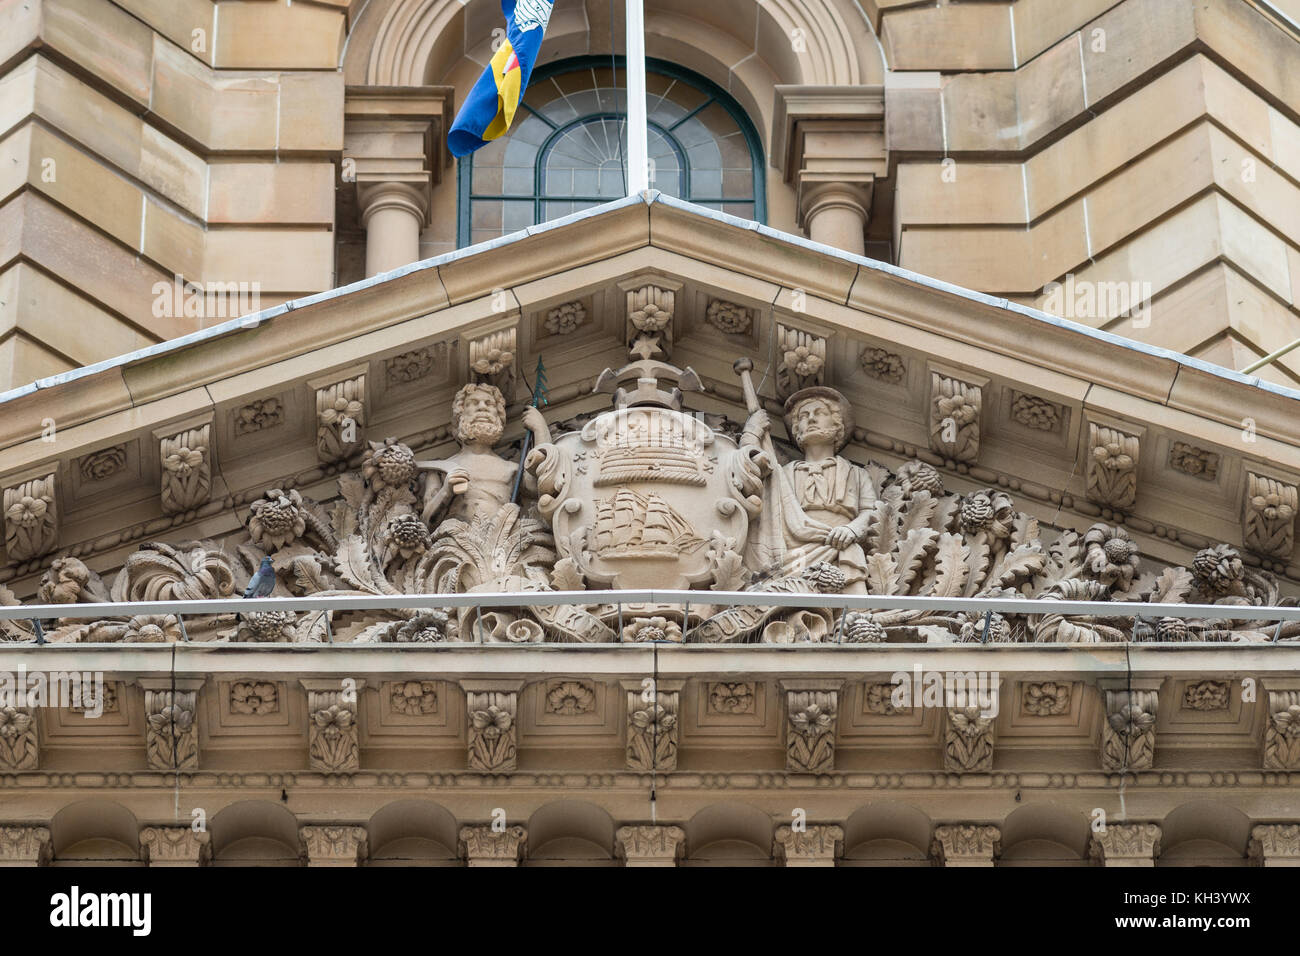 Sydney, Australia - 25 marzo 2017: primo piano della parte superiore di colore marrone stone town hall focus sul fregio decorato con statue in facciata anteriore al di sopra di entrata. Foto Stock